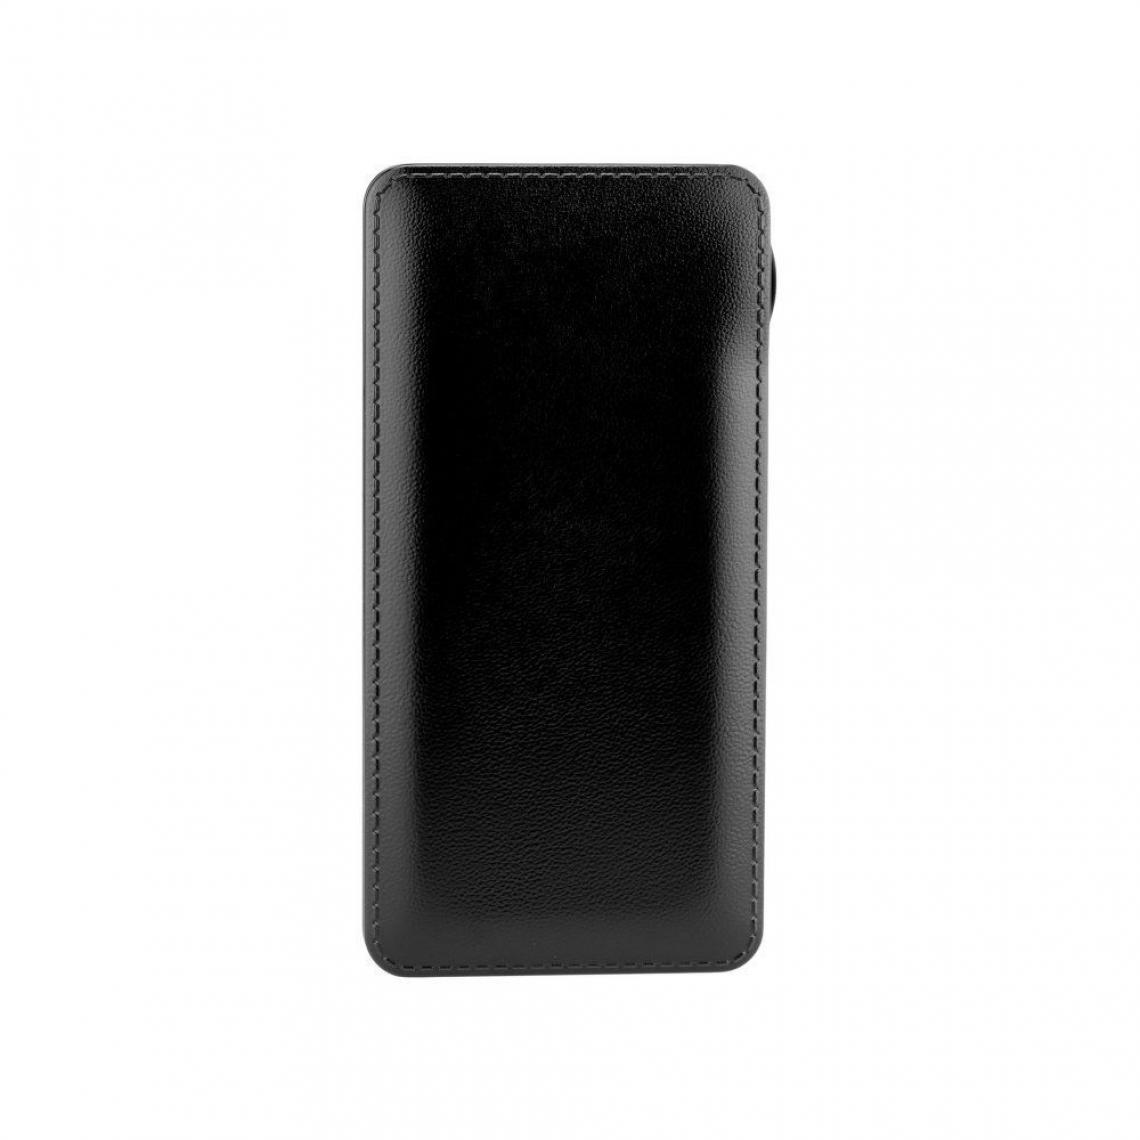 Ozzzo - Chargeur batterie externe 30000 mAh powerbank ozzzo noir pour Logicom M bot tab 103 - Autres accessoires smartphone